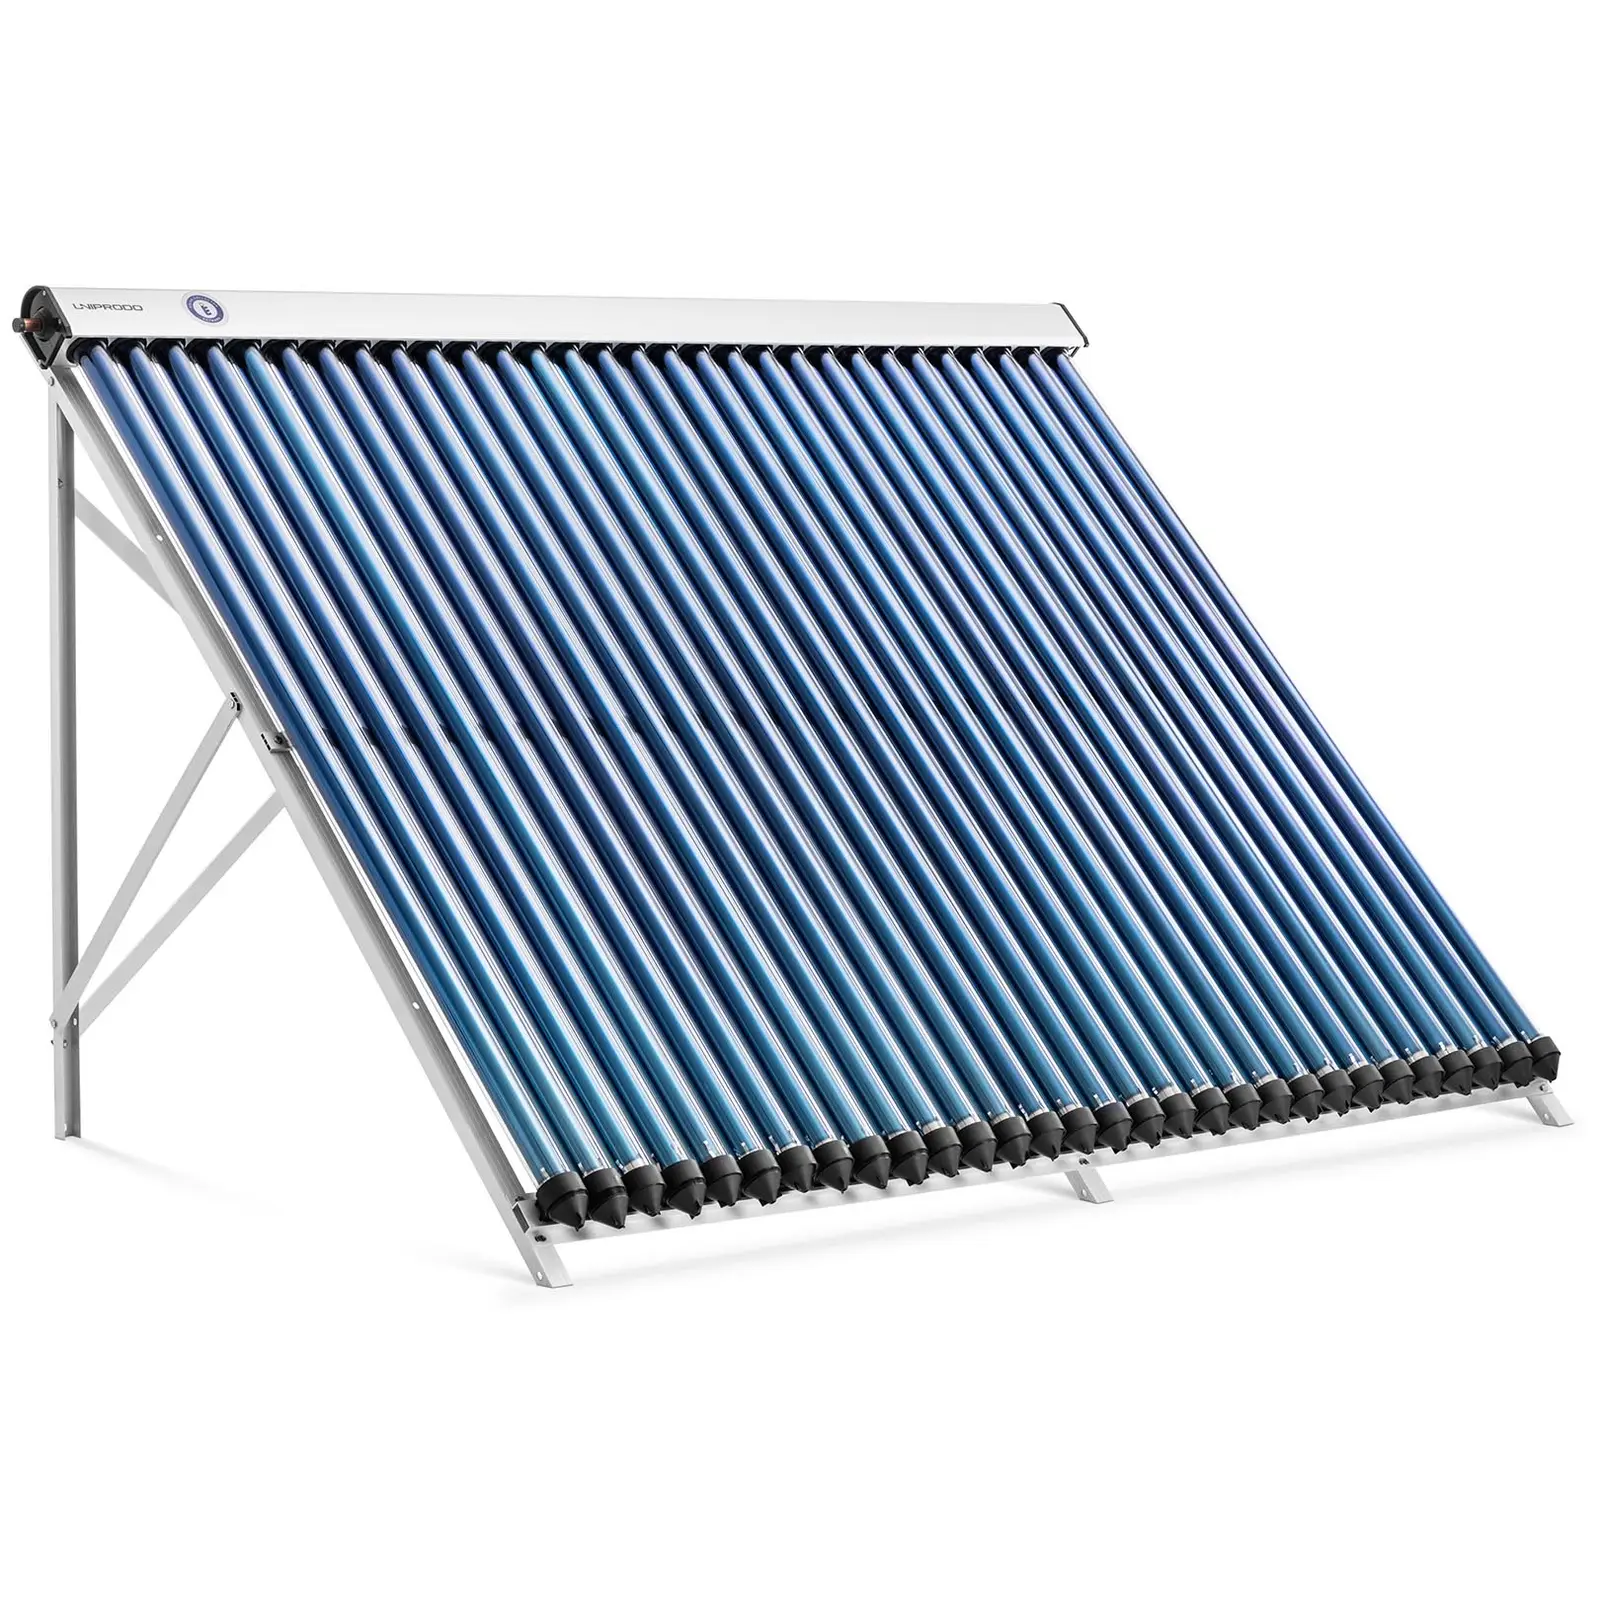 Pannello solare termico - {{number_of_tube_attachments}} tubi - 250 - 300 L - 2.4 m² - -45 - 90 °C